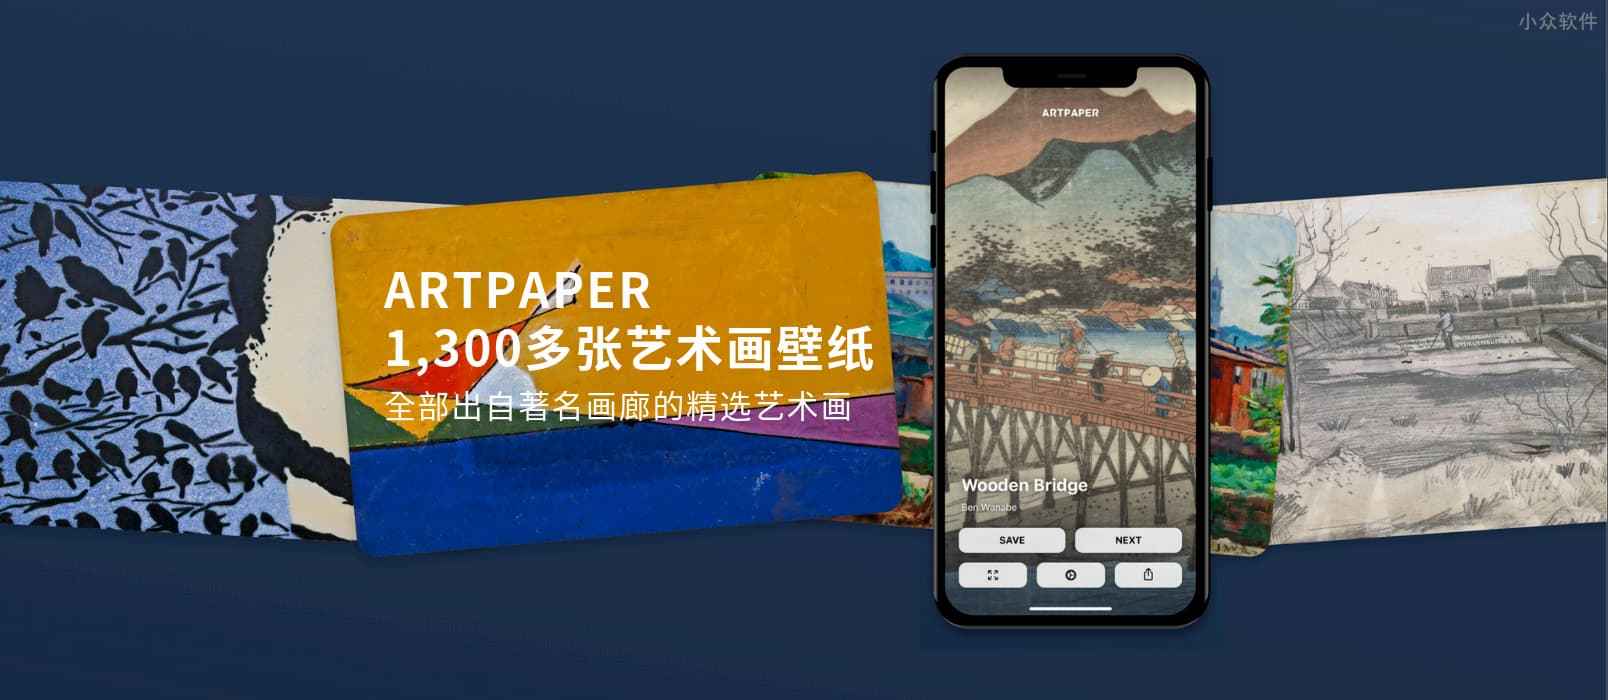 拥有 1300 多张 5K 高分辨率艺术画壁纸的应用 Artpaper 发布 iOS 正式版